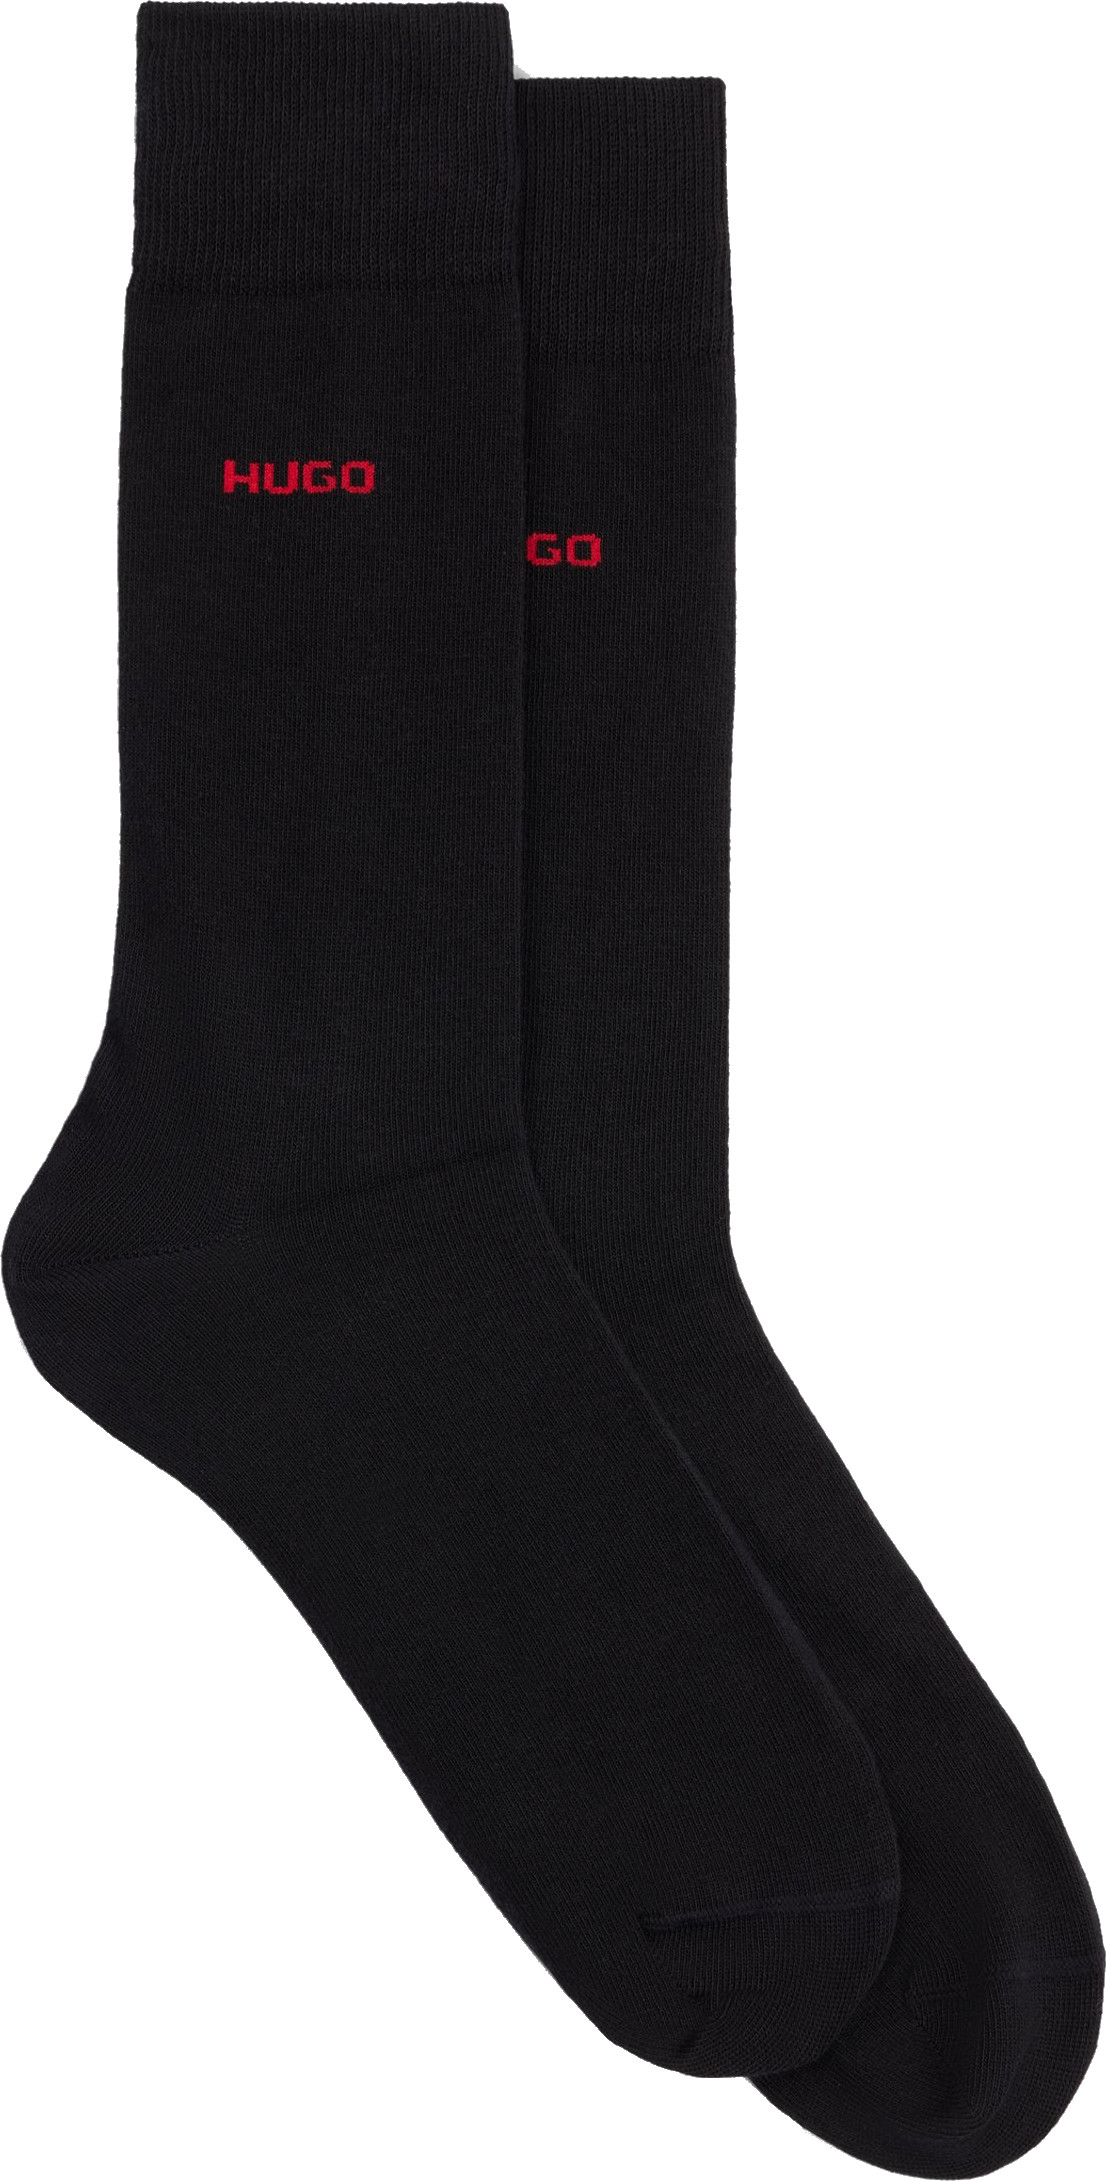 Hugo Boss 2 PACK - pánske ponožky HUGO 50468099-001 43-46